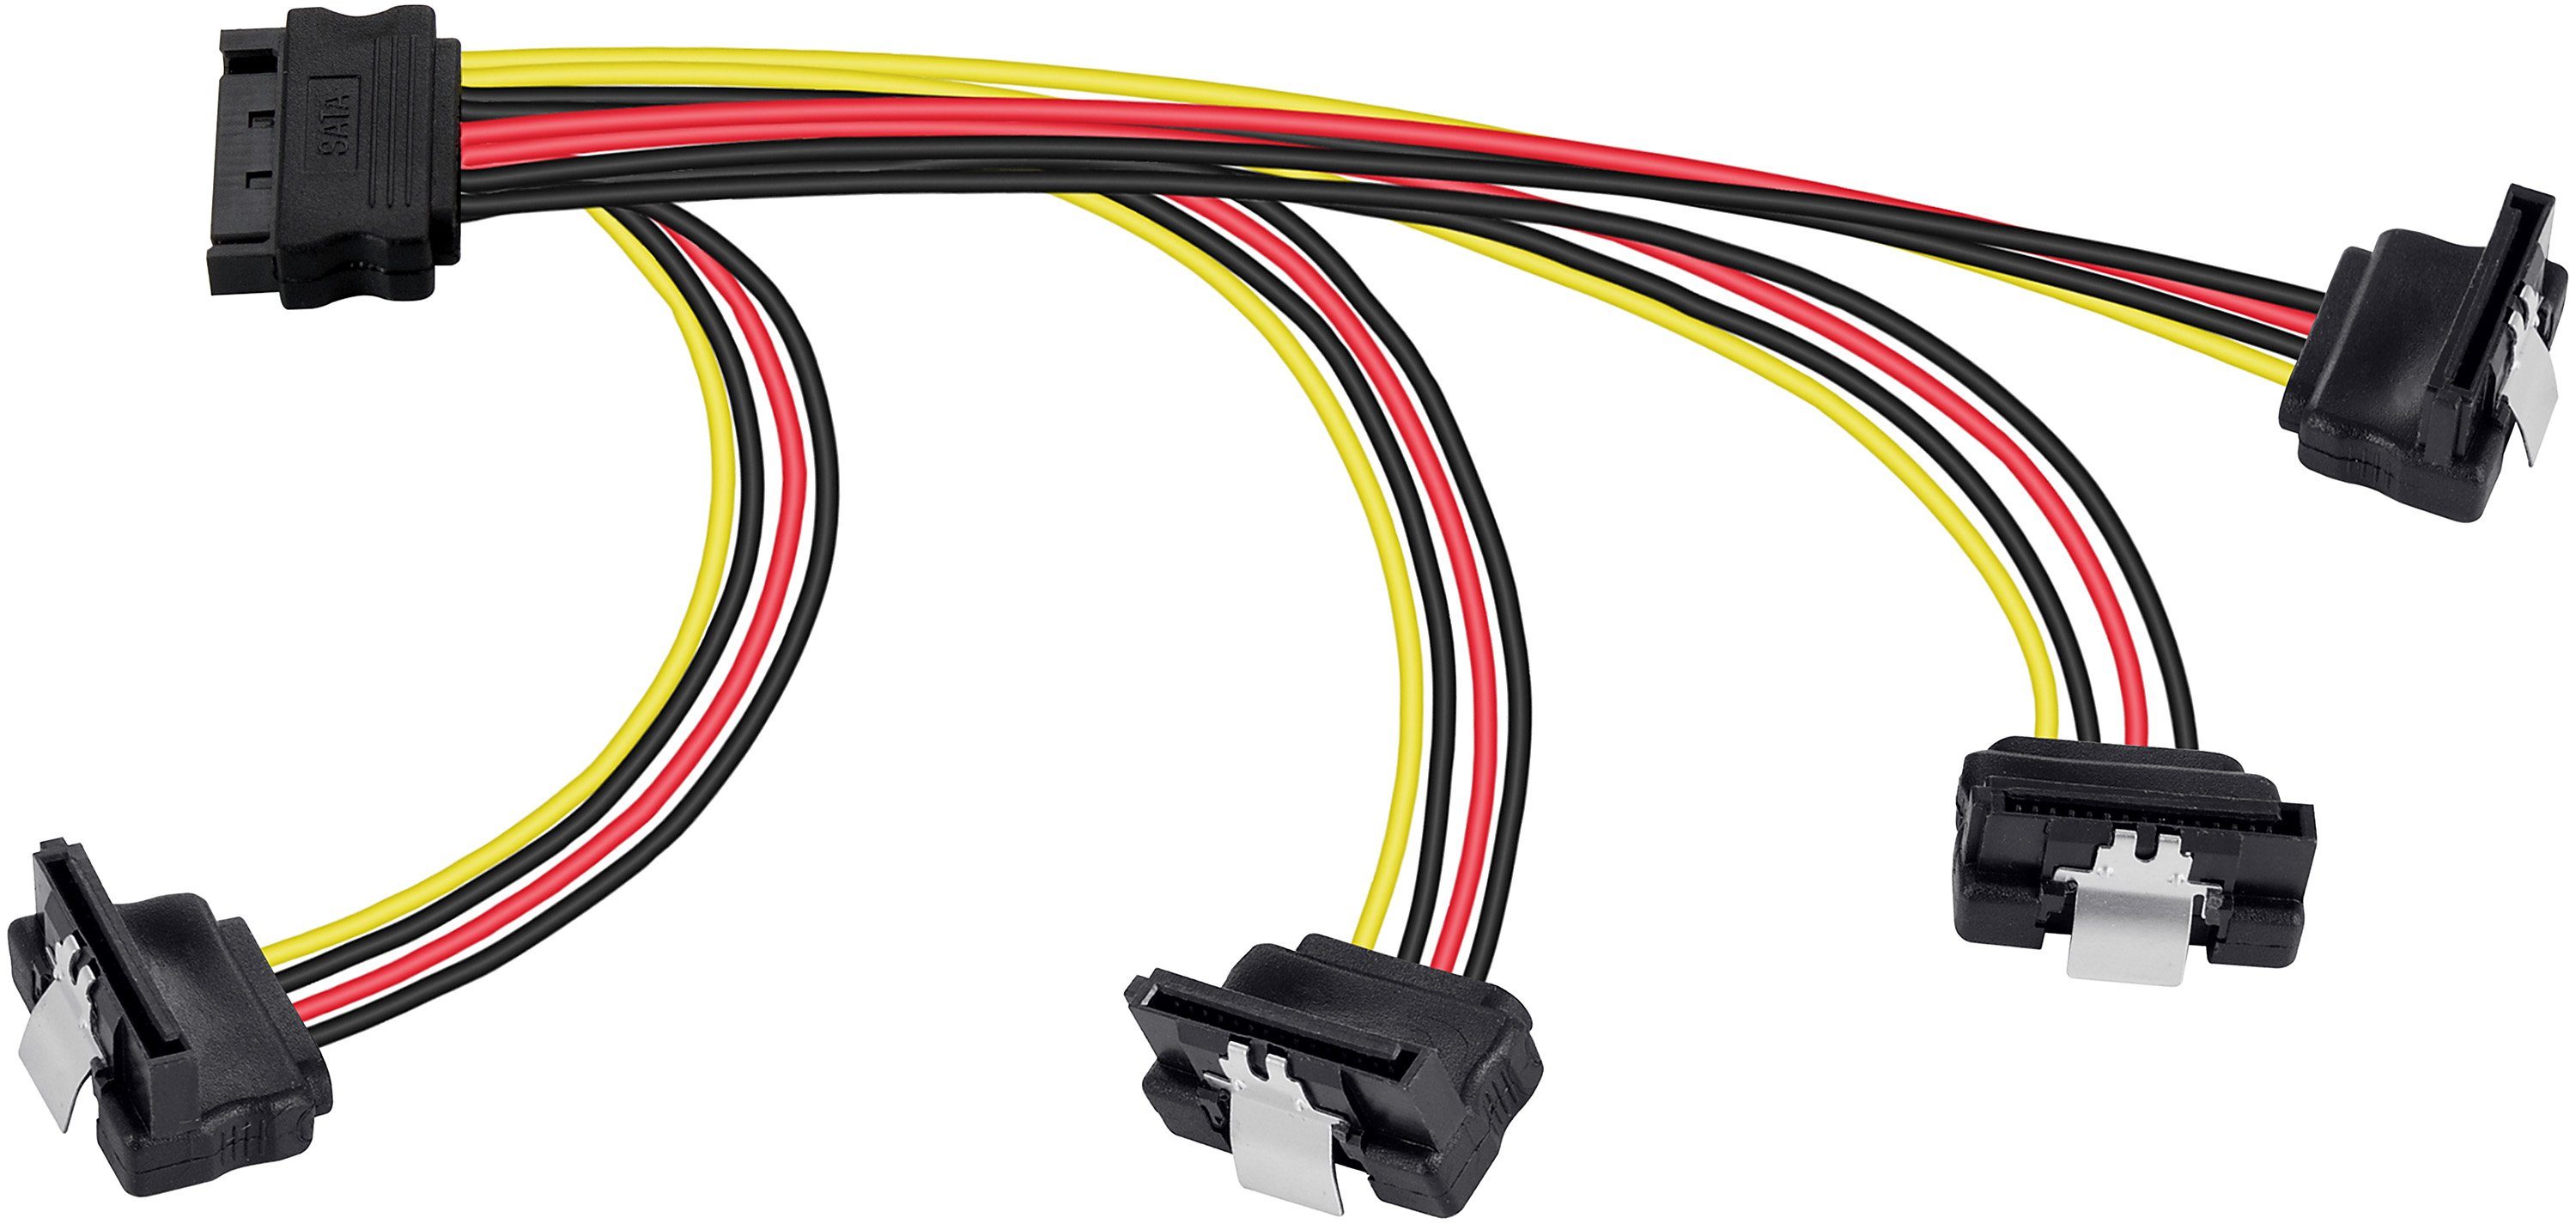 Poppstar SATA Stromkabel Verteiler (20cm) (m) Stromkabel, 4-fach gerade/gewinkelt Stecker Motherboard gewinkelt Buchse für 20cm Adapter auf Splitter Festplatte, 4x (w) HDD, 1x SSD